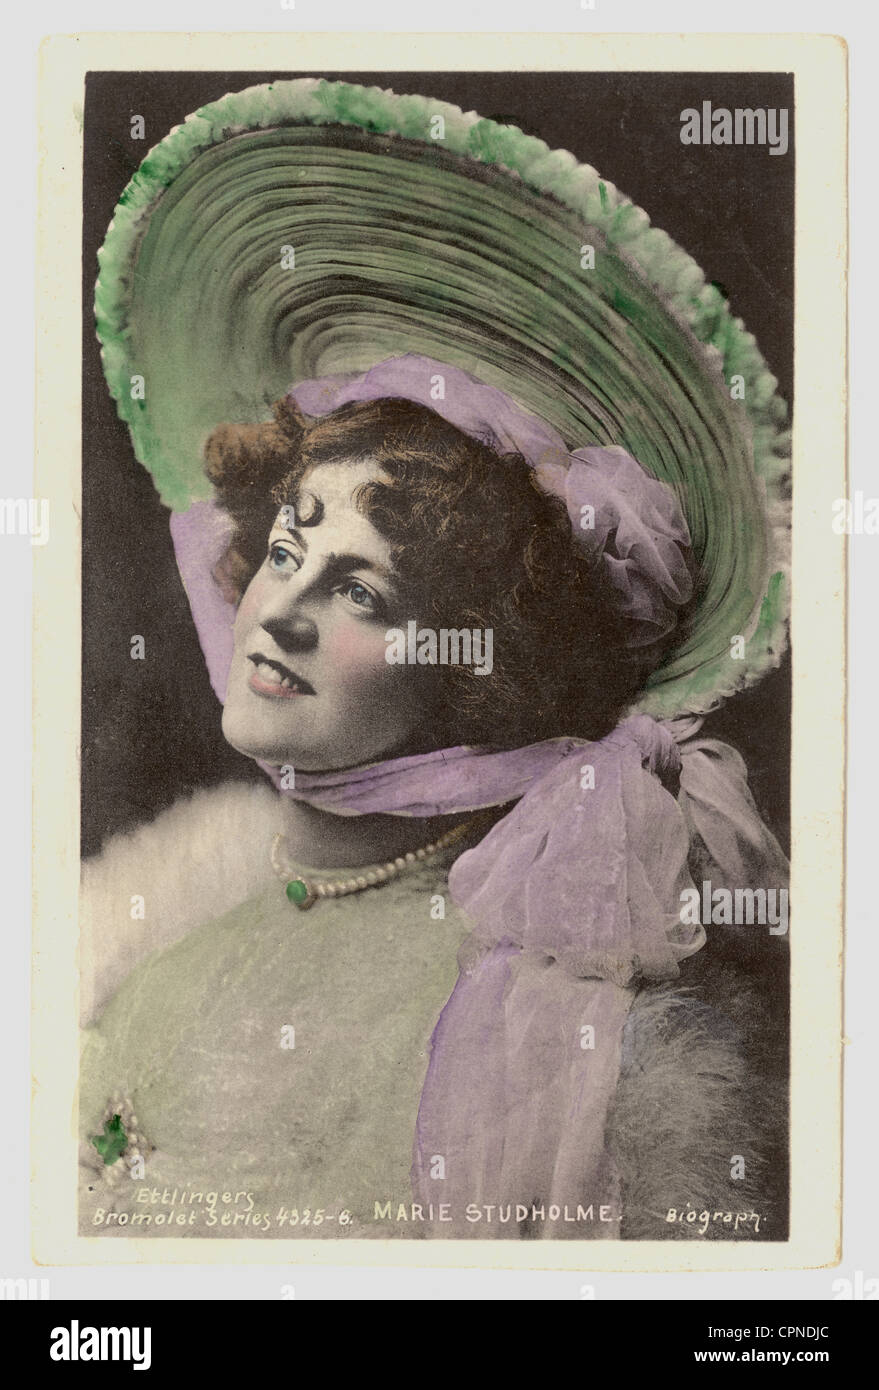 Teinté à la main de carte postale glamour style édouardien Anglais populaire chanteuse et actrice, Marie Studholme, datée du Royaume-Uni 1905 Banque D'Images